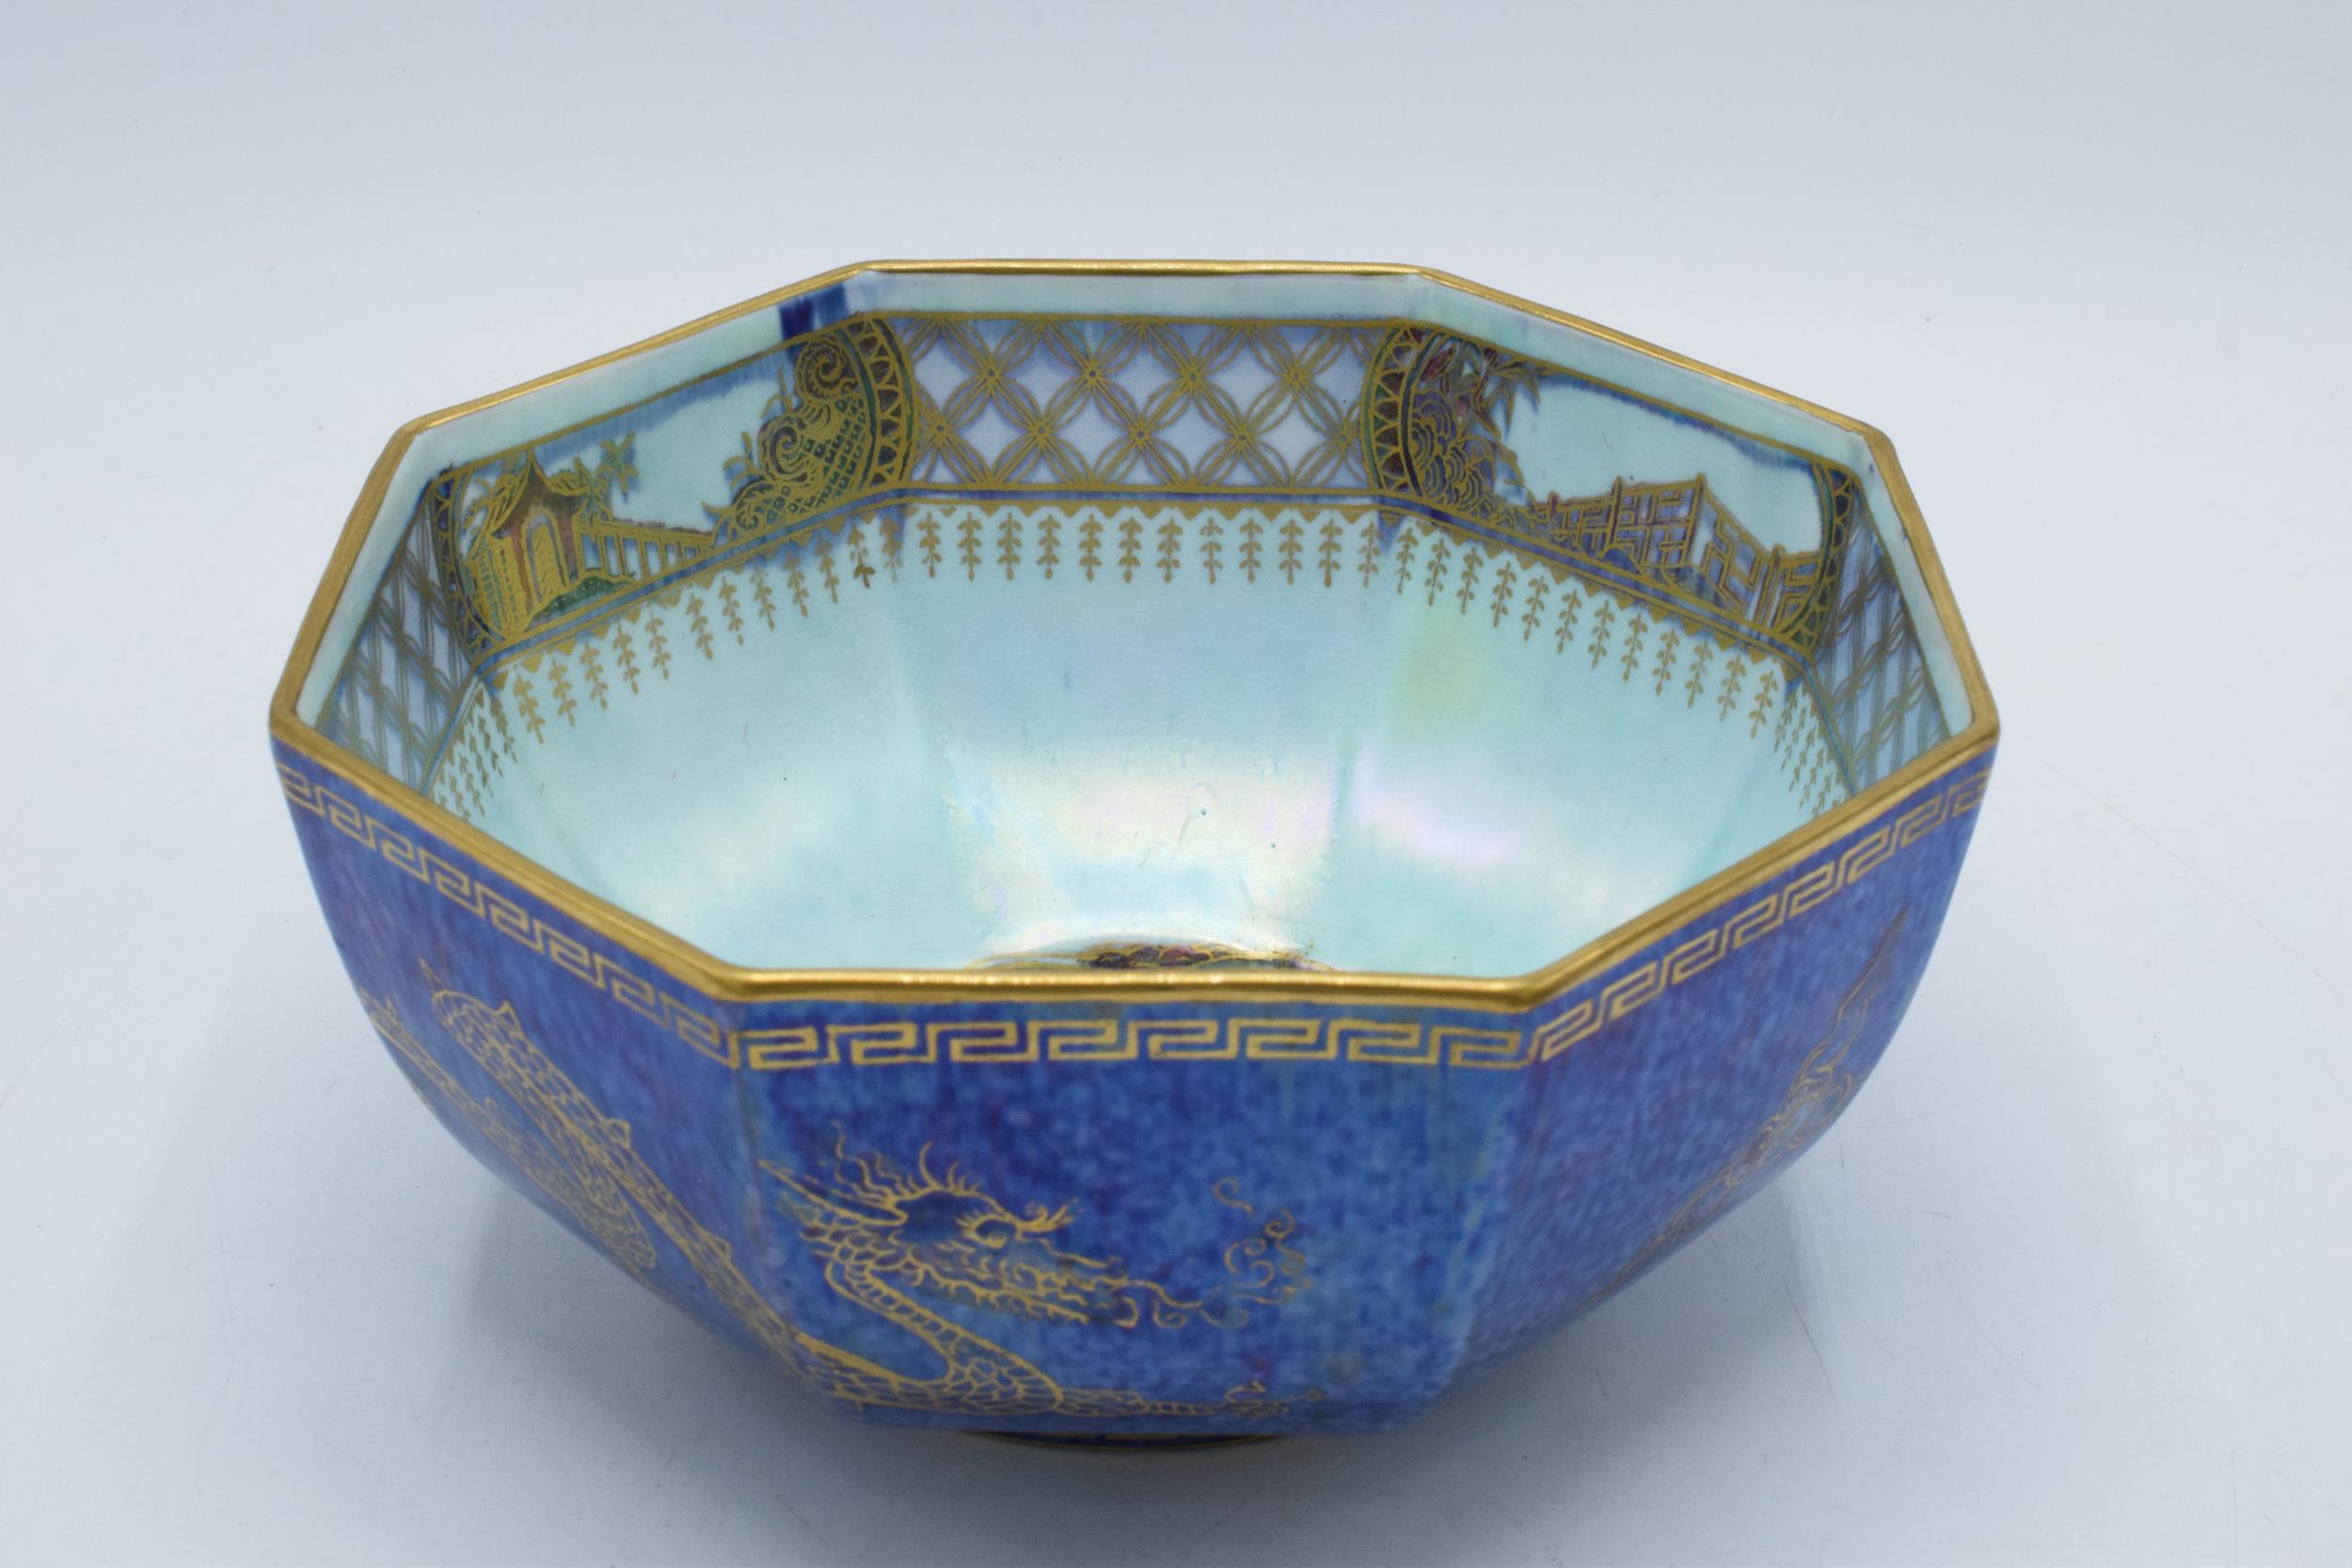 Wedgwood Dragon lustre hexagonal bowl designed by Daisy Makeig-Jones. 16cm diameter, 8cm tall. In